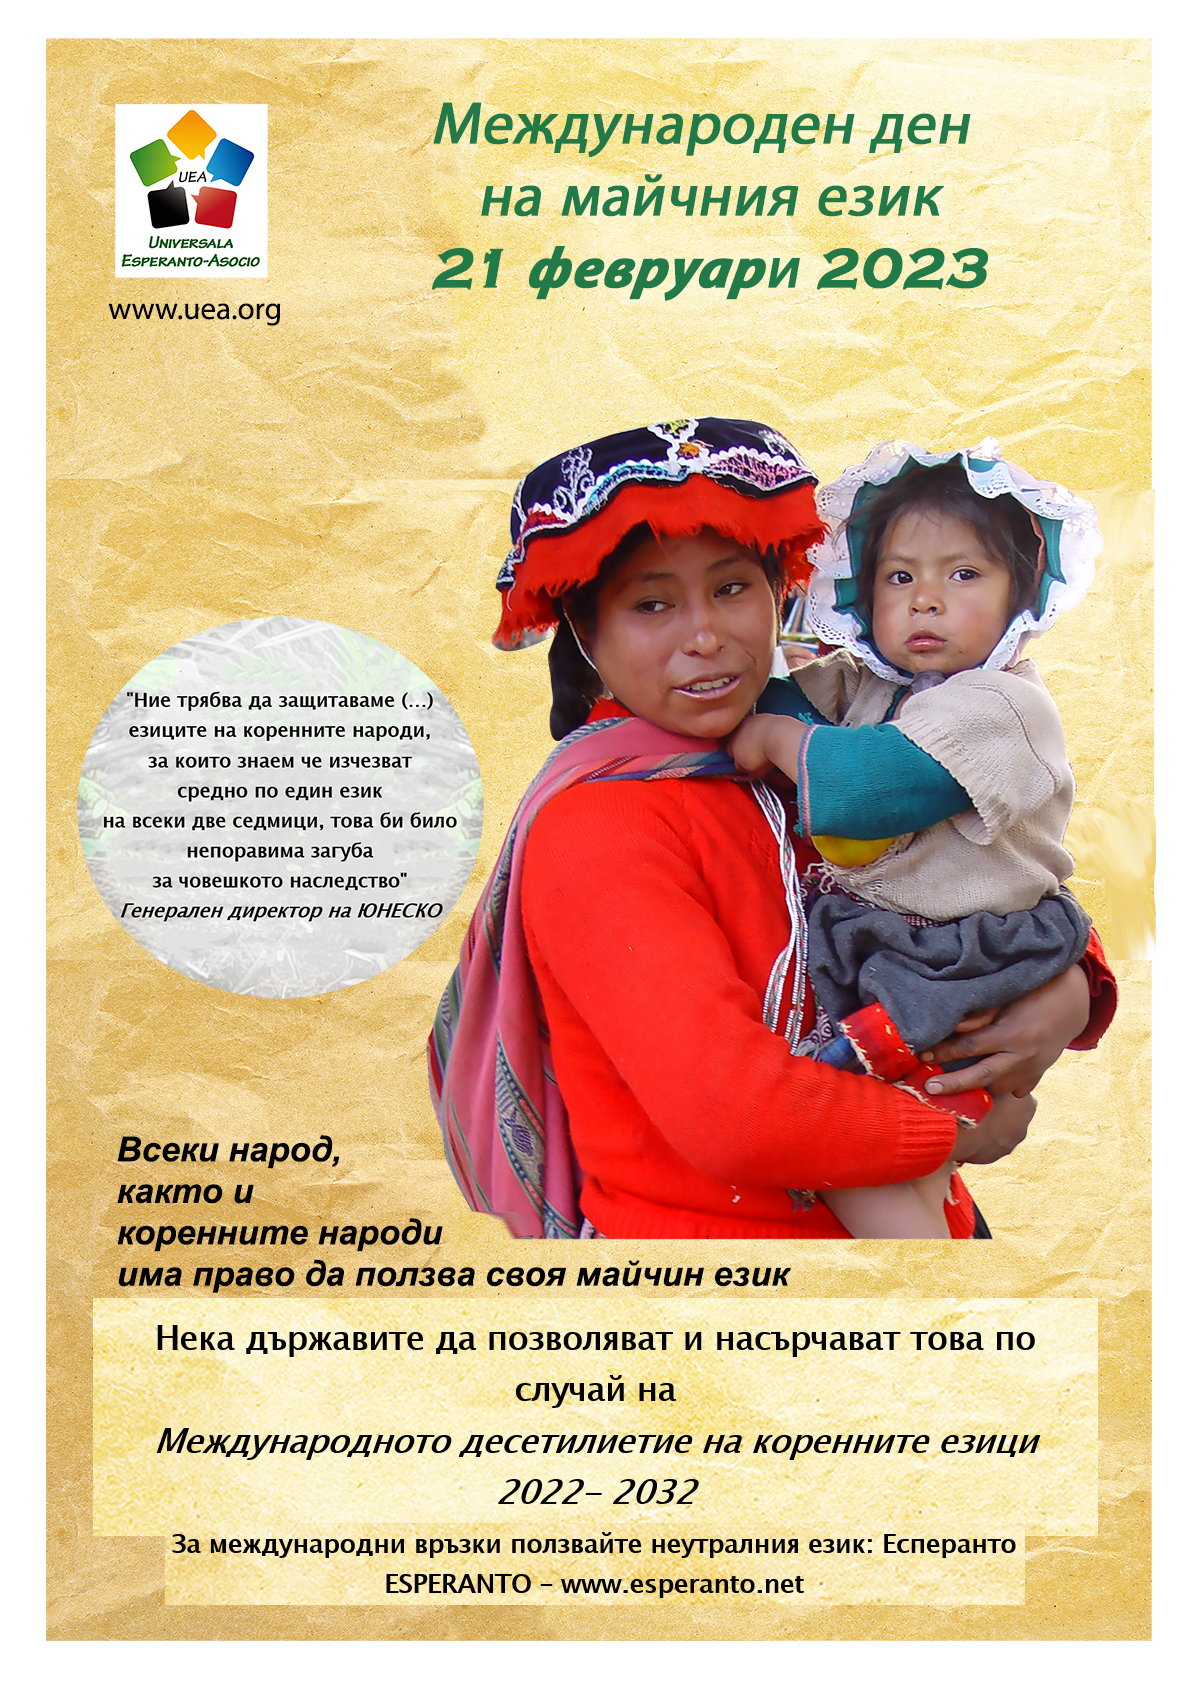 Internacia Tago de la Gepatra Lingvo, 21-a de februaro 2023 - (bulgara | bg | Български език) klaku por vidi la grandan (preseblan) afiŝversion (en nova fenestro)